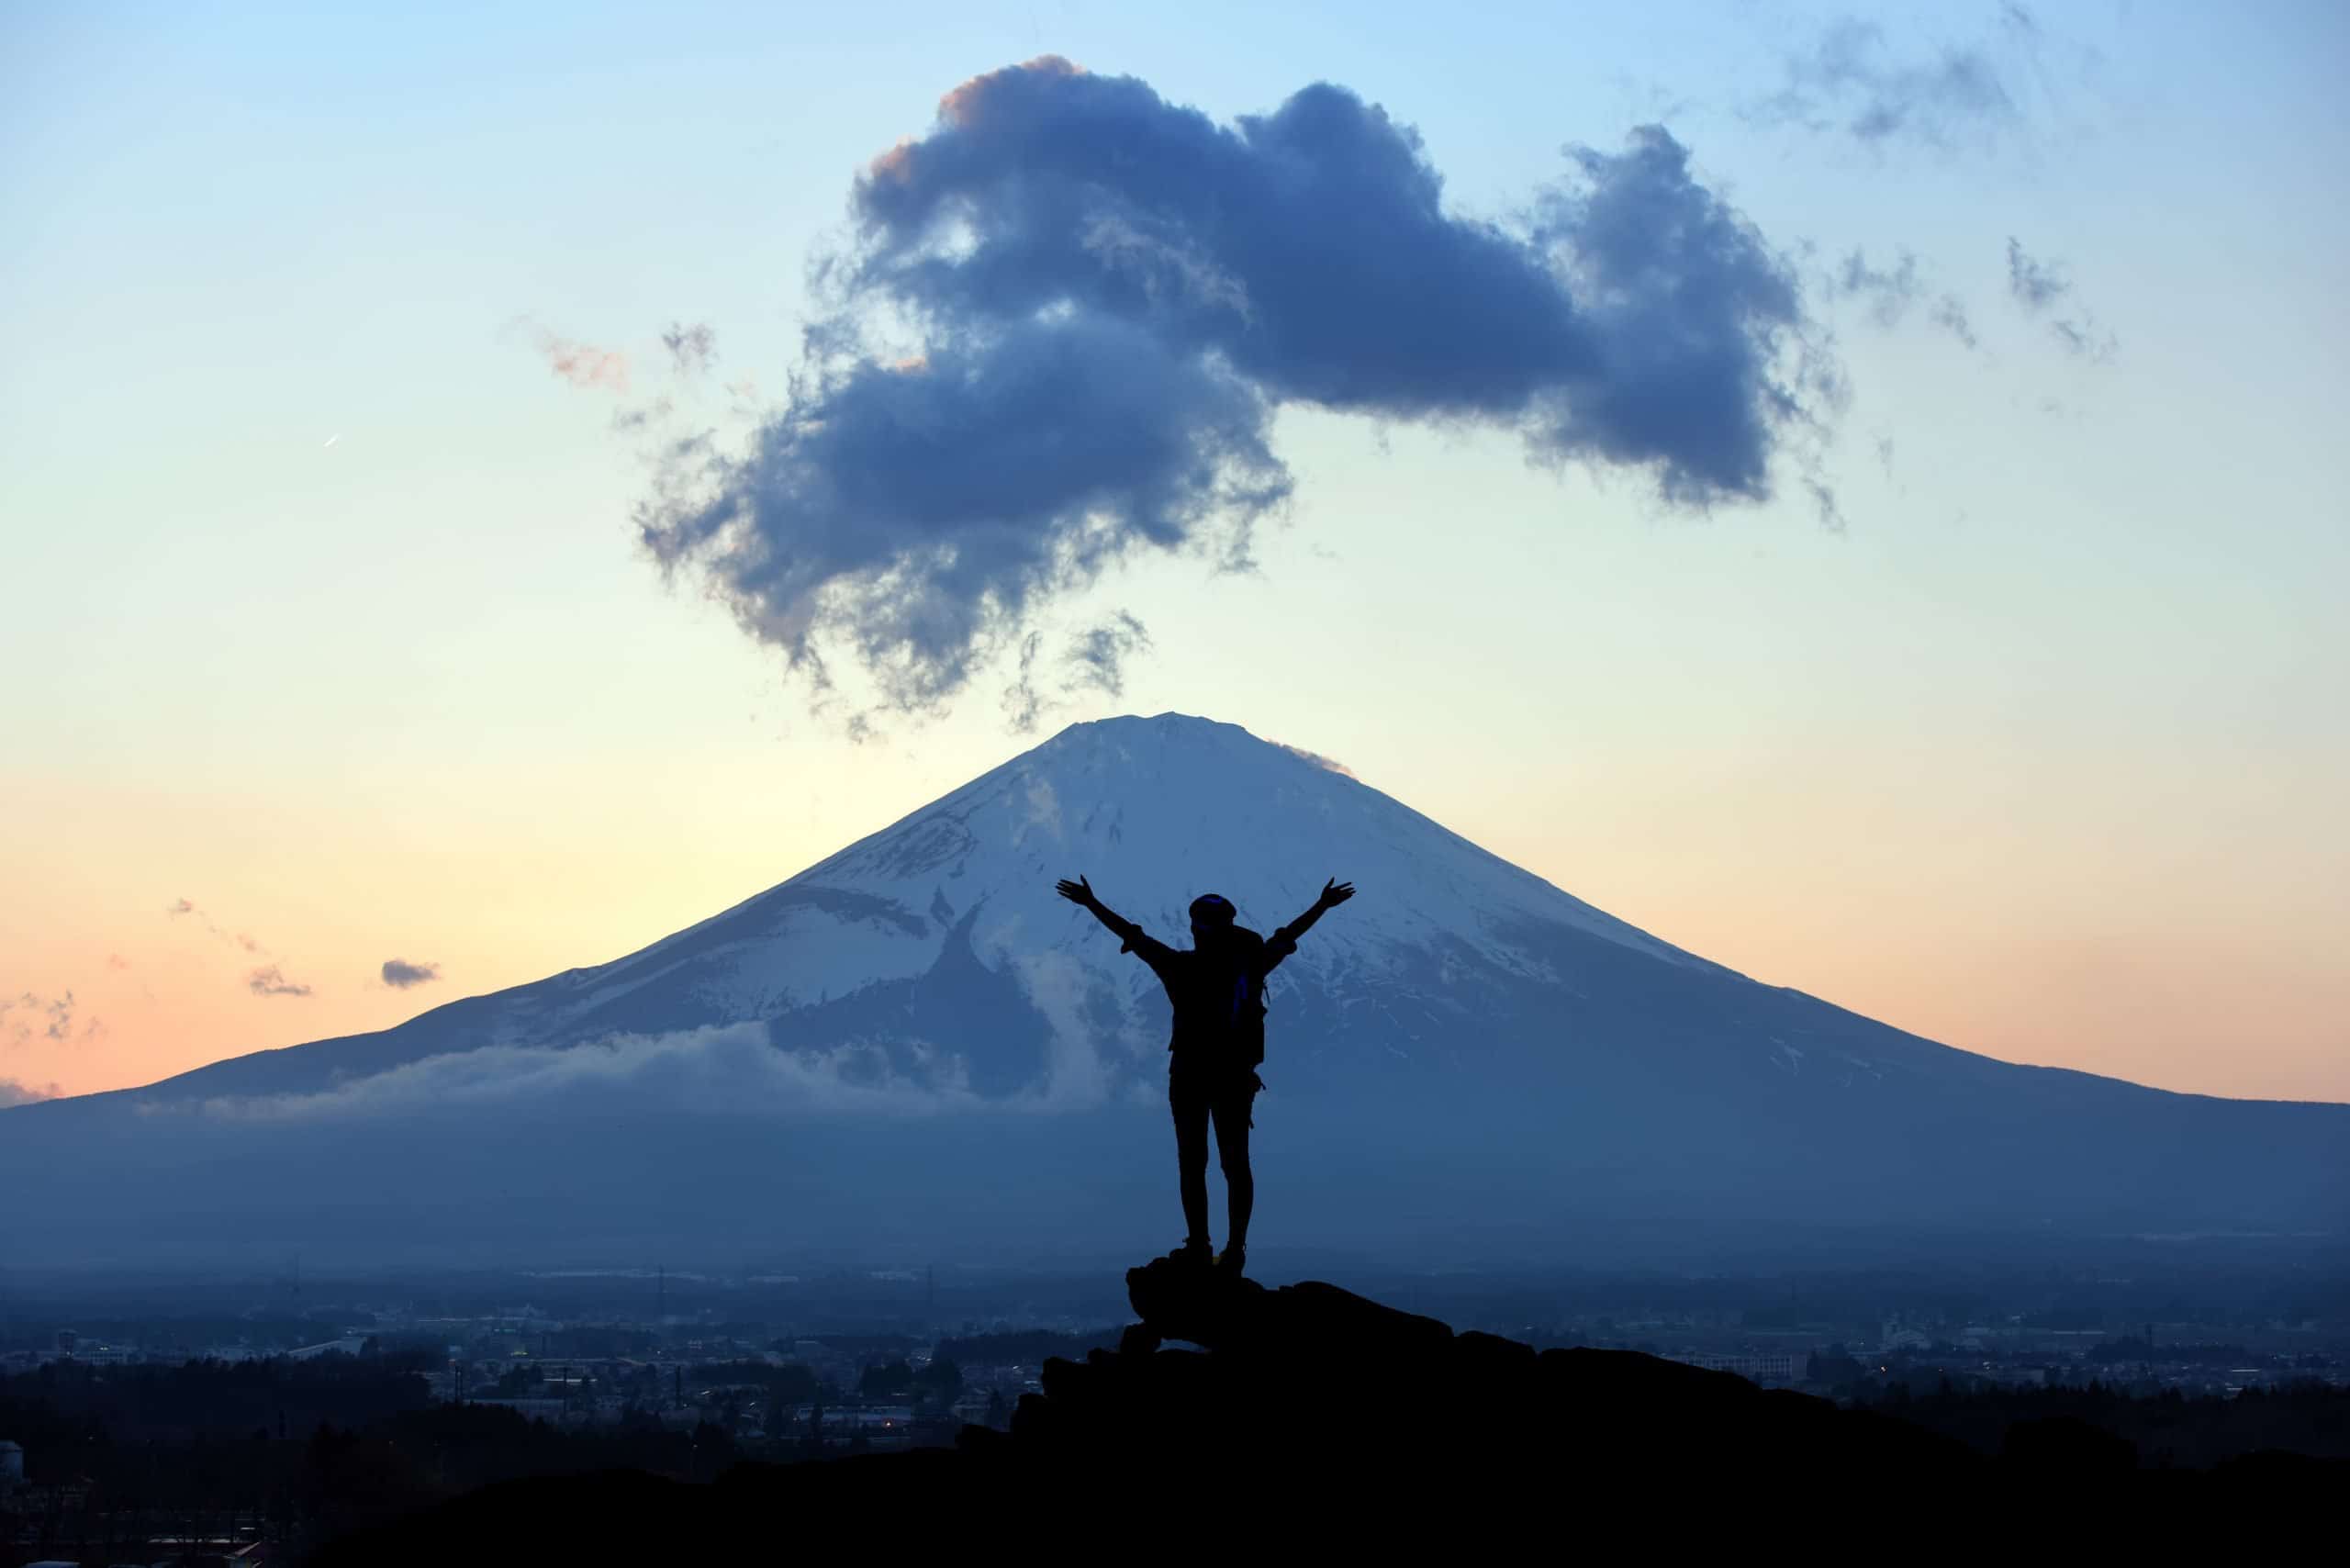 So You Want to Climb Mt. Fuji?